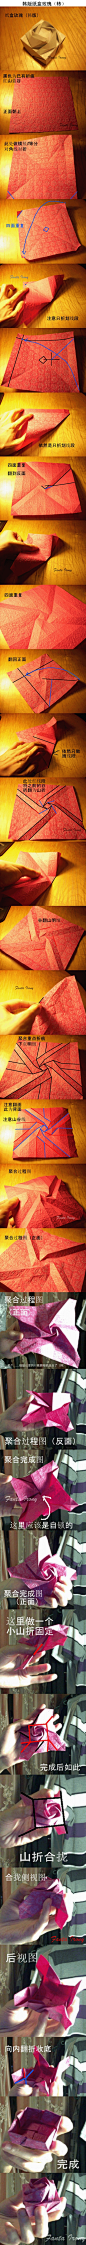 韩版纸盒玫瑰折纸